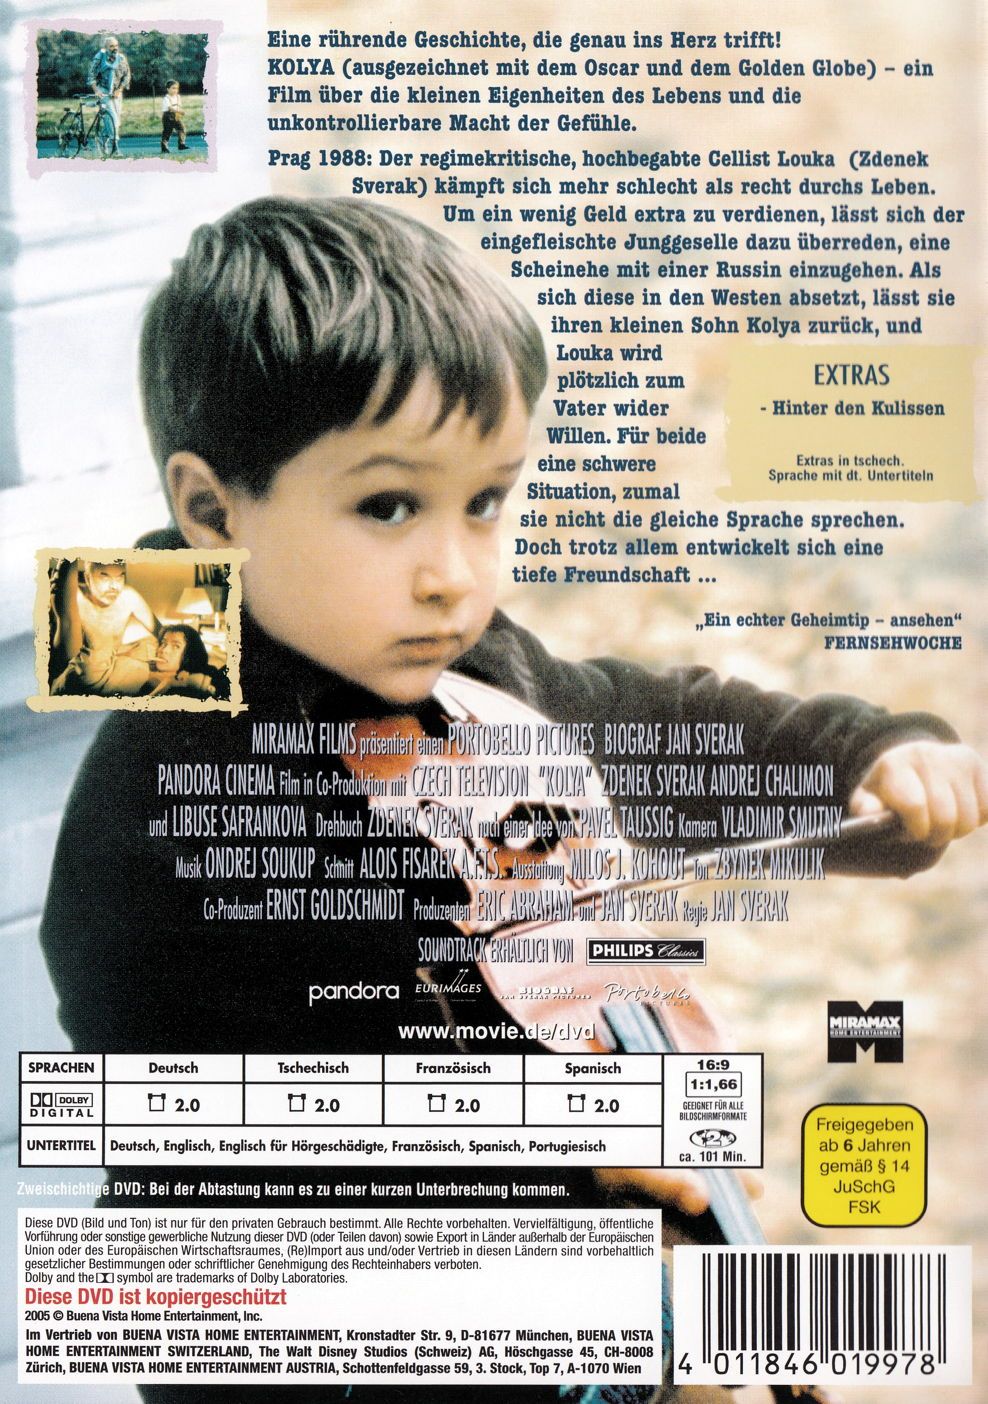 Film Kolya [DVD] von Jan Sverak gebraucht kaufen bei Melando Schweiz